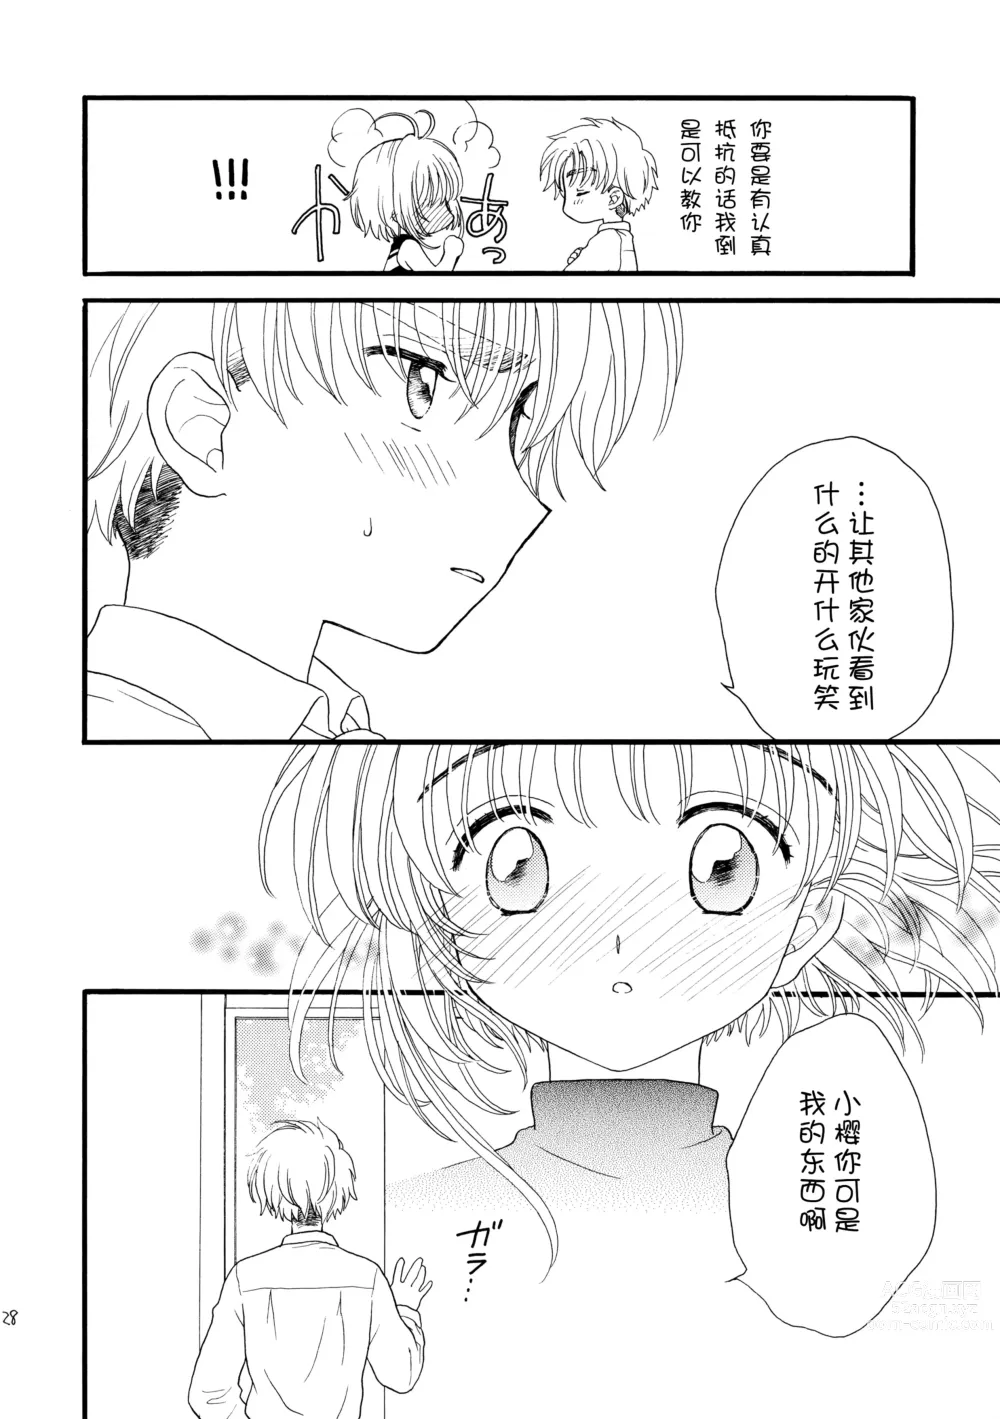 Page 28 of doujinshi Hitorijime